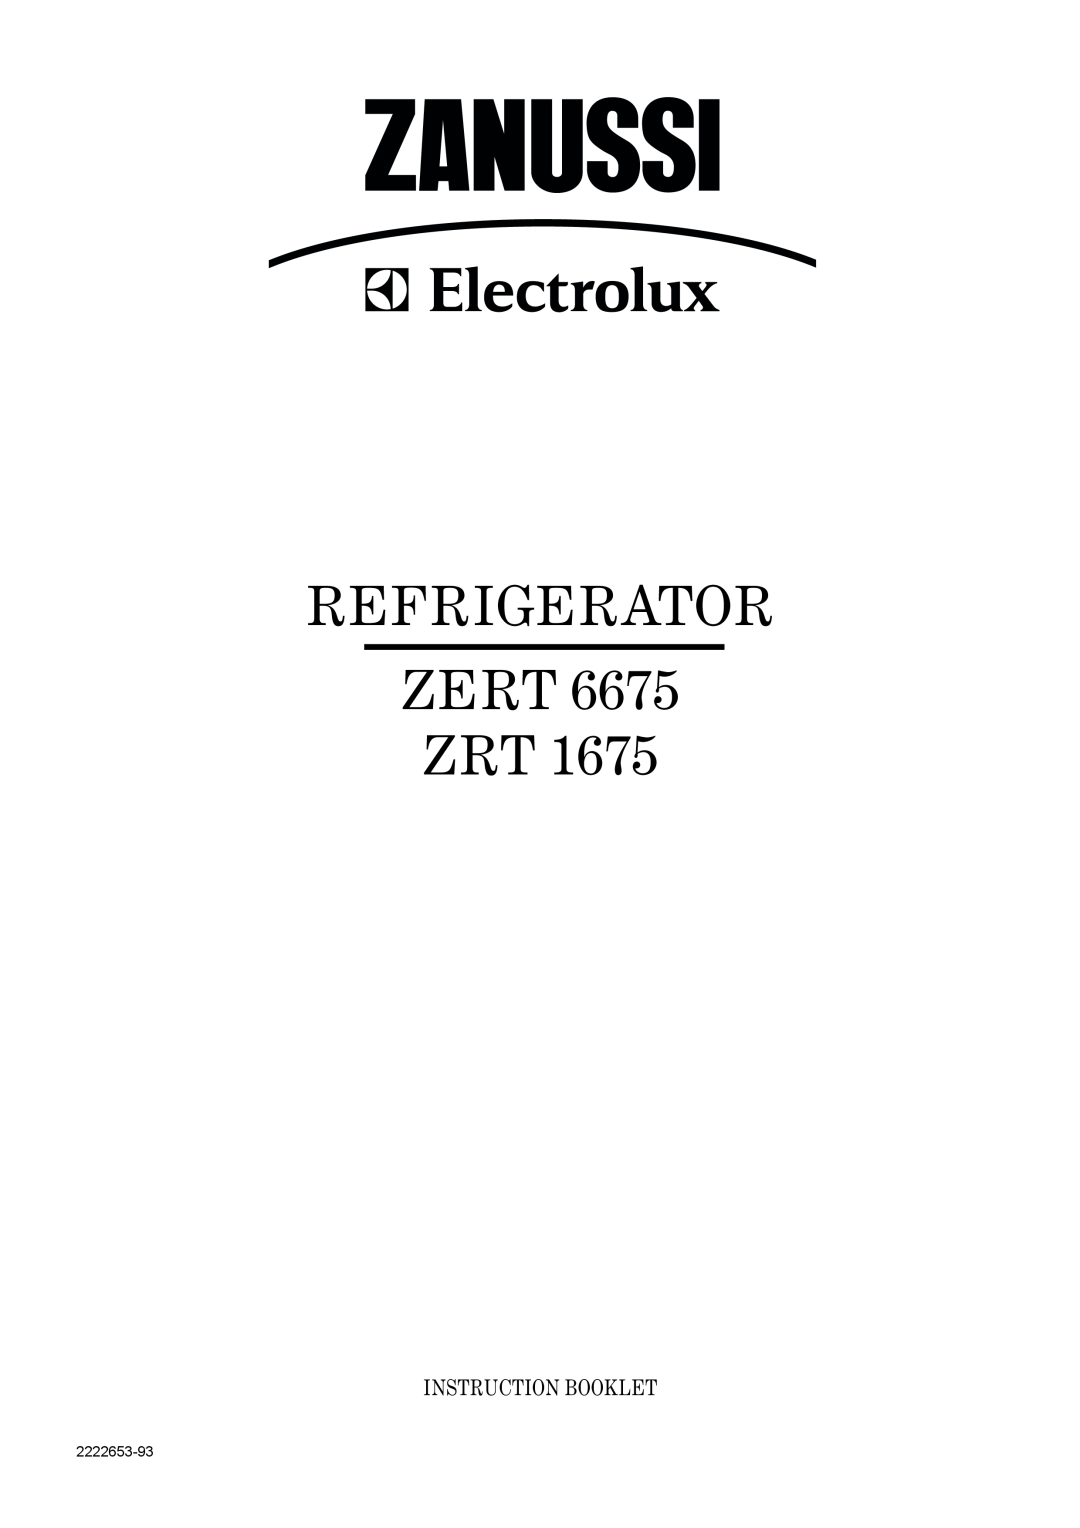 Zanussi ZRT 1675, ZERT 6675 manual Refrigerator, Zert Zrt, Instruction Booklet, 2222653-93 